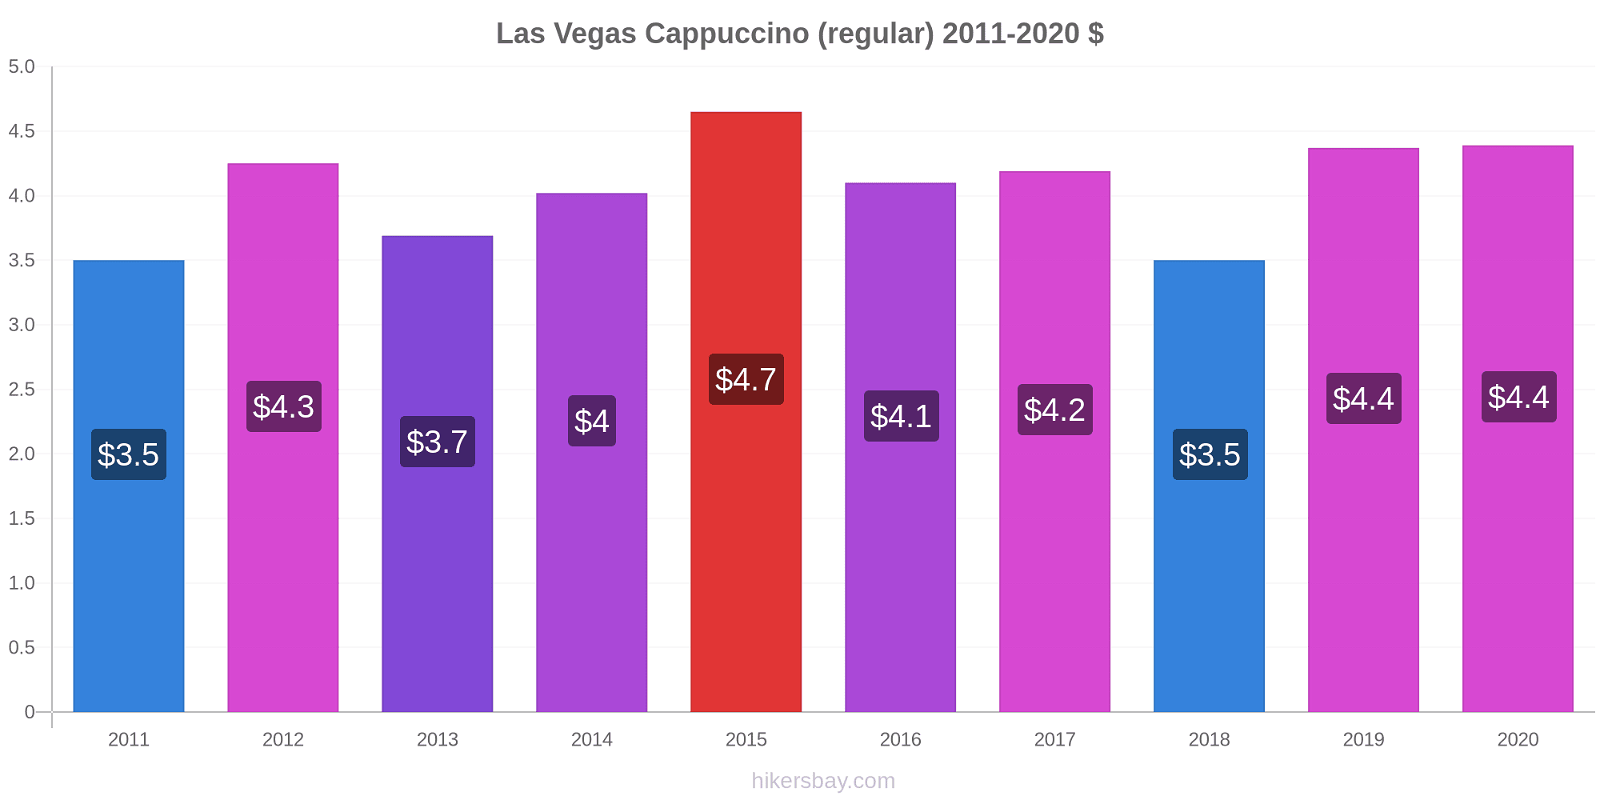 Las Vegas price changes Cappuccino (regular) hikersbay.com